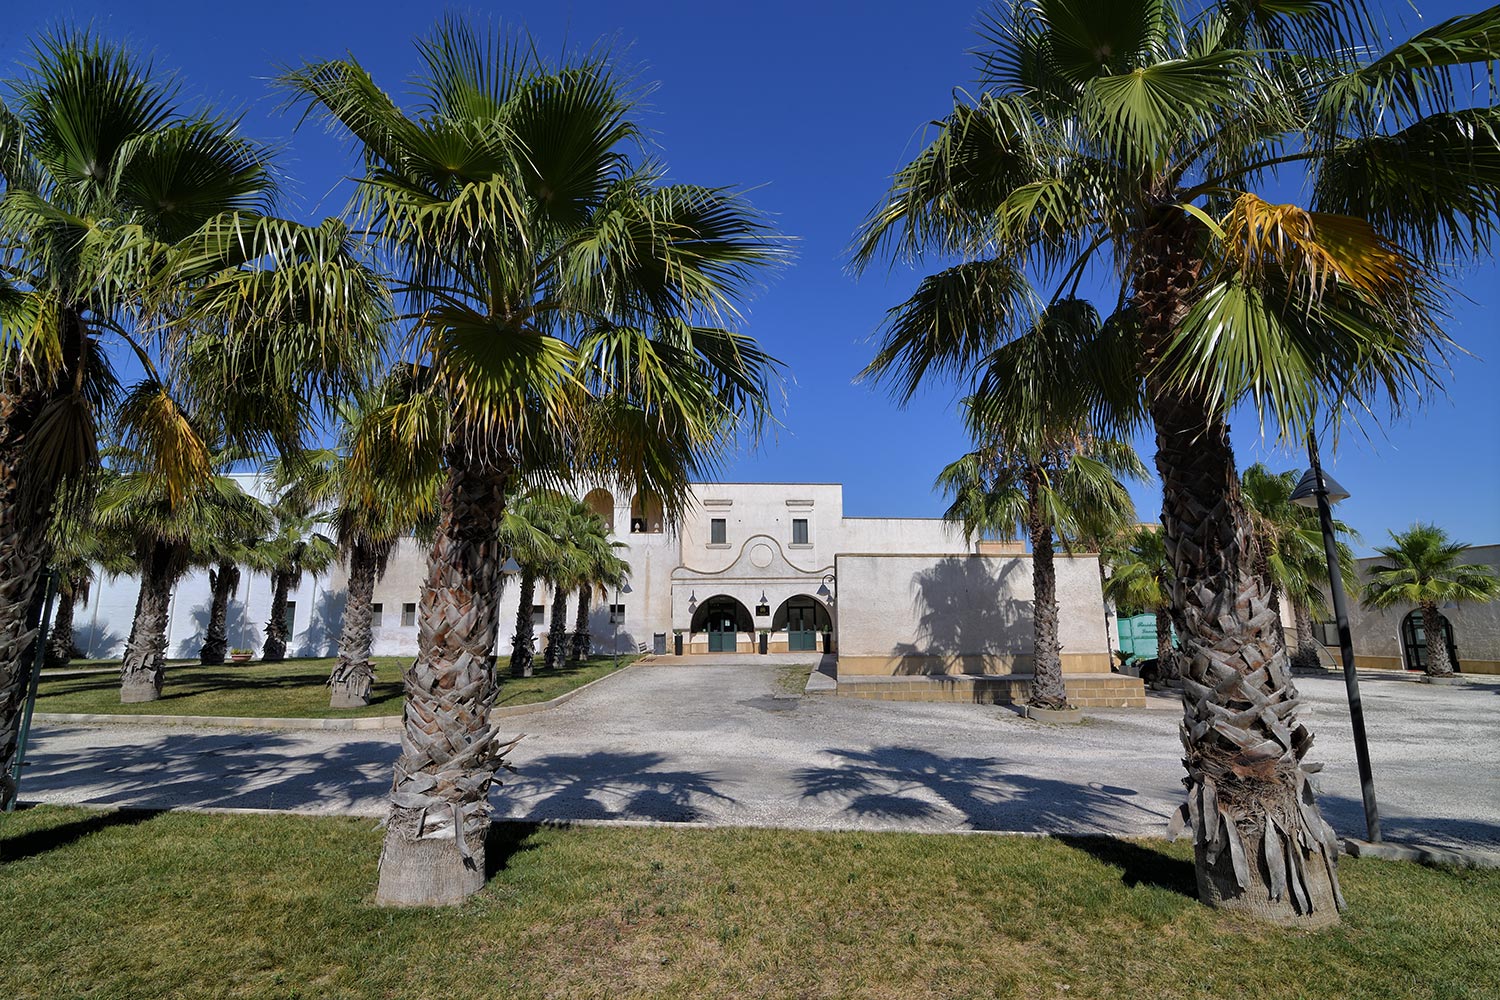 Hotel Residence con parco per bambini a Oria Brindisi in Puglia